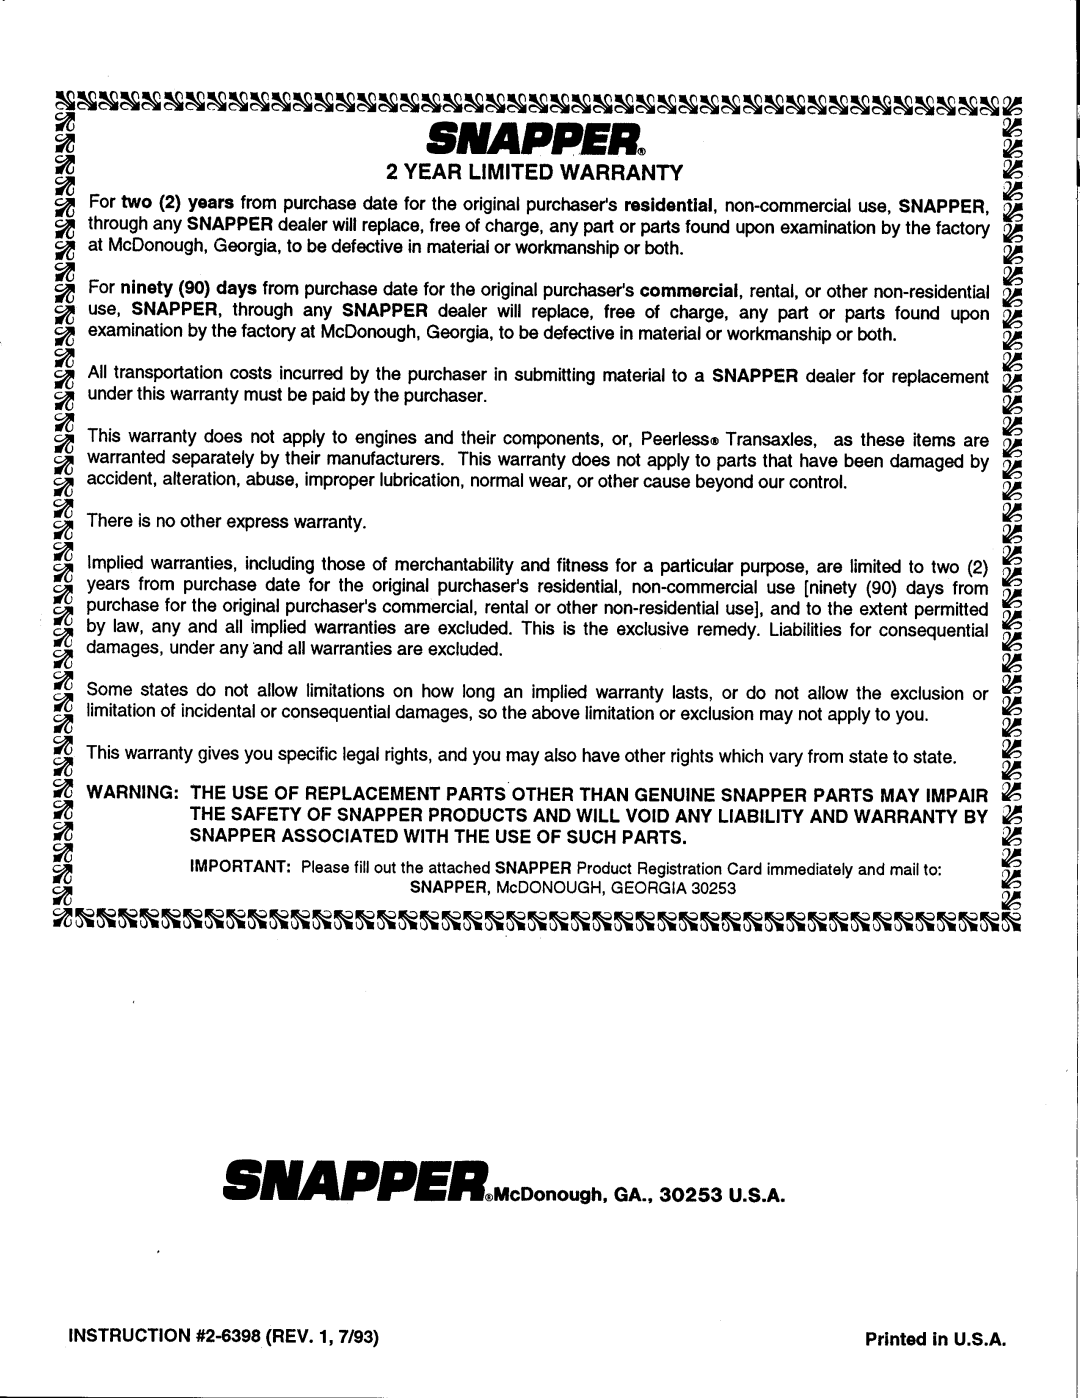 Snapper ODP21400 manual 